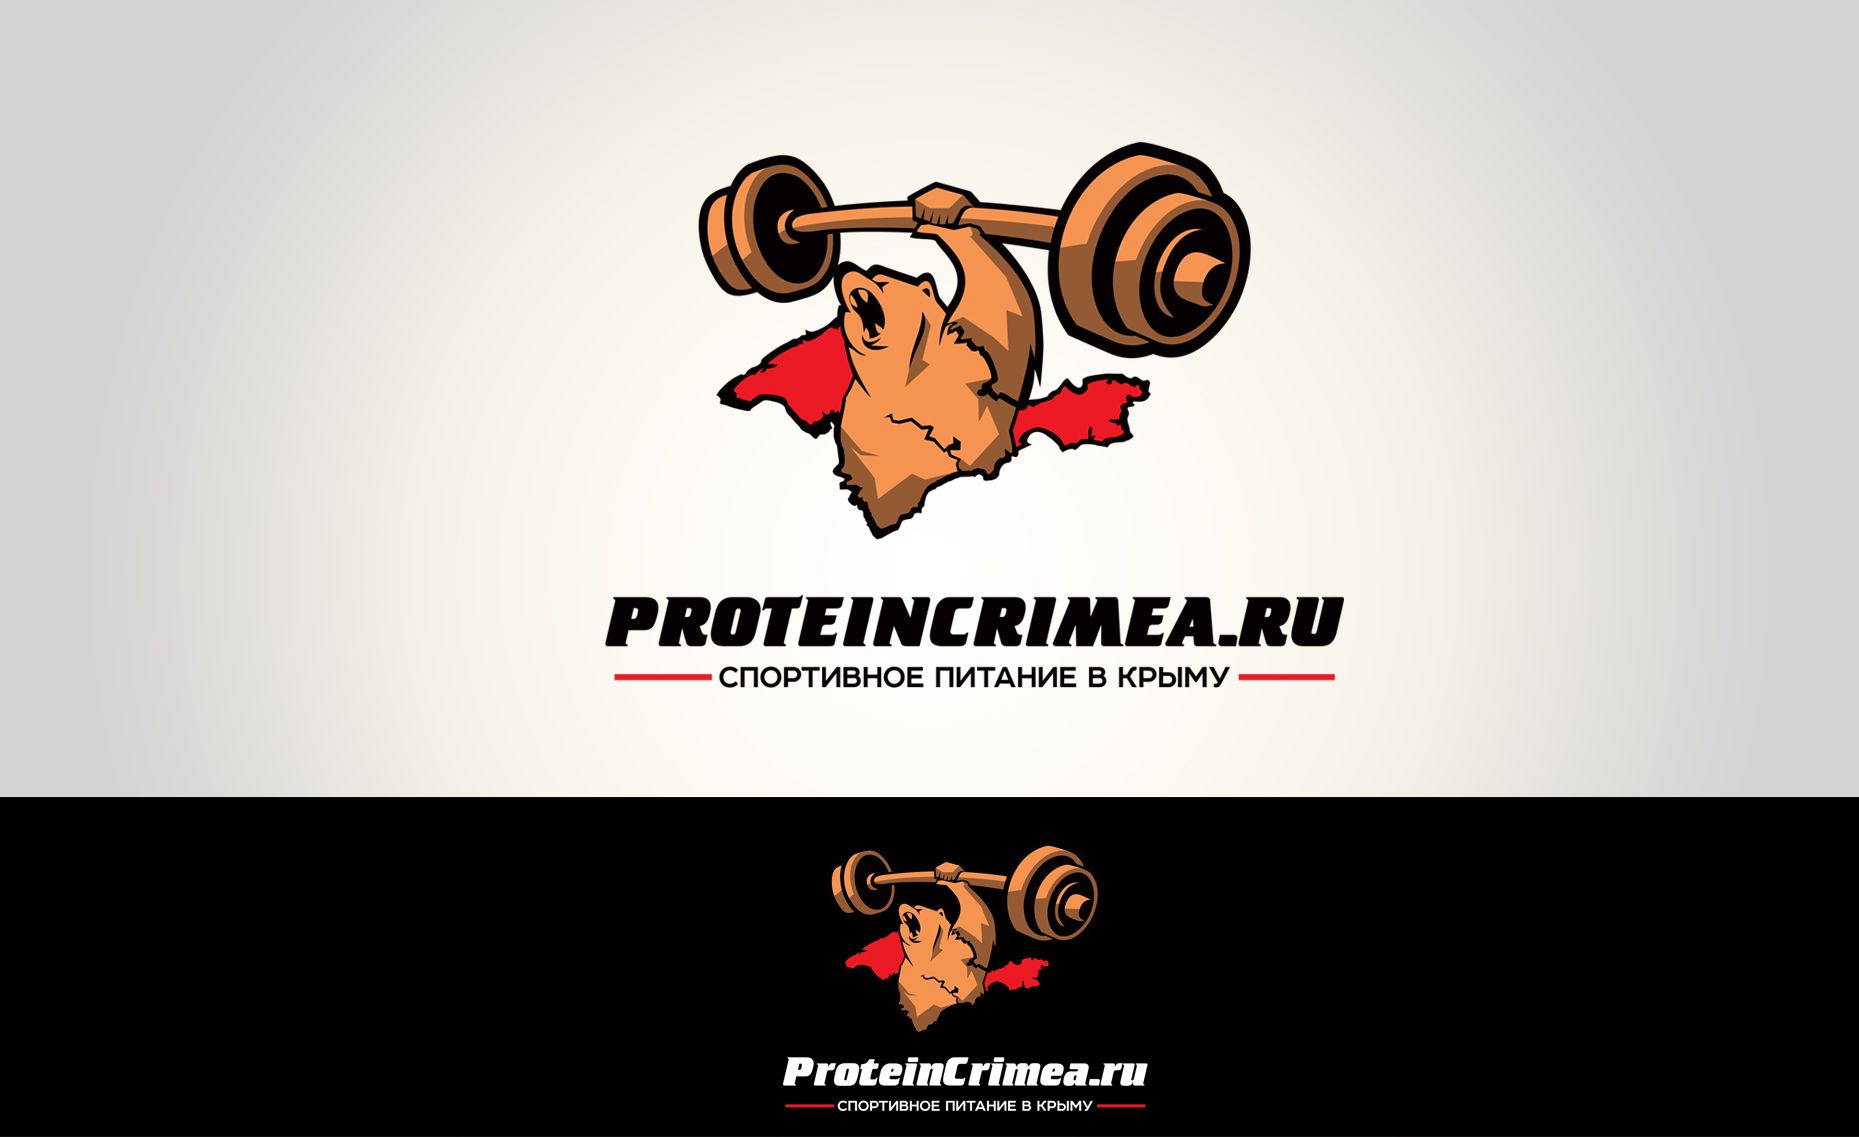 Логотип для ProteinCrimea.ru - дизайнер Elshan